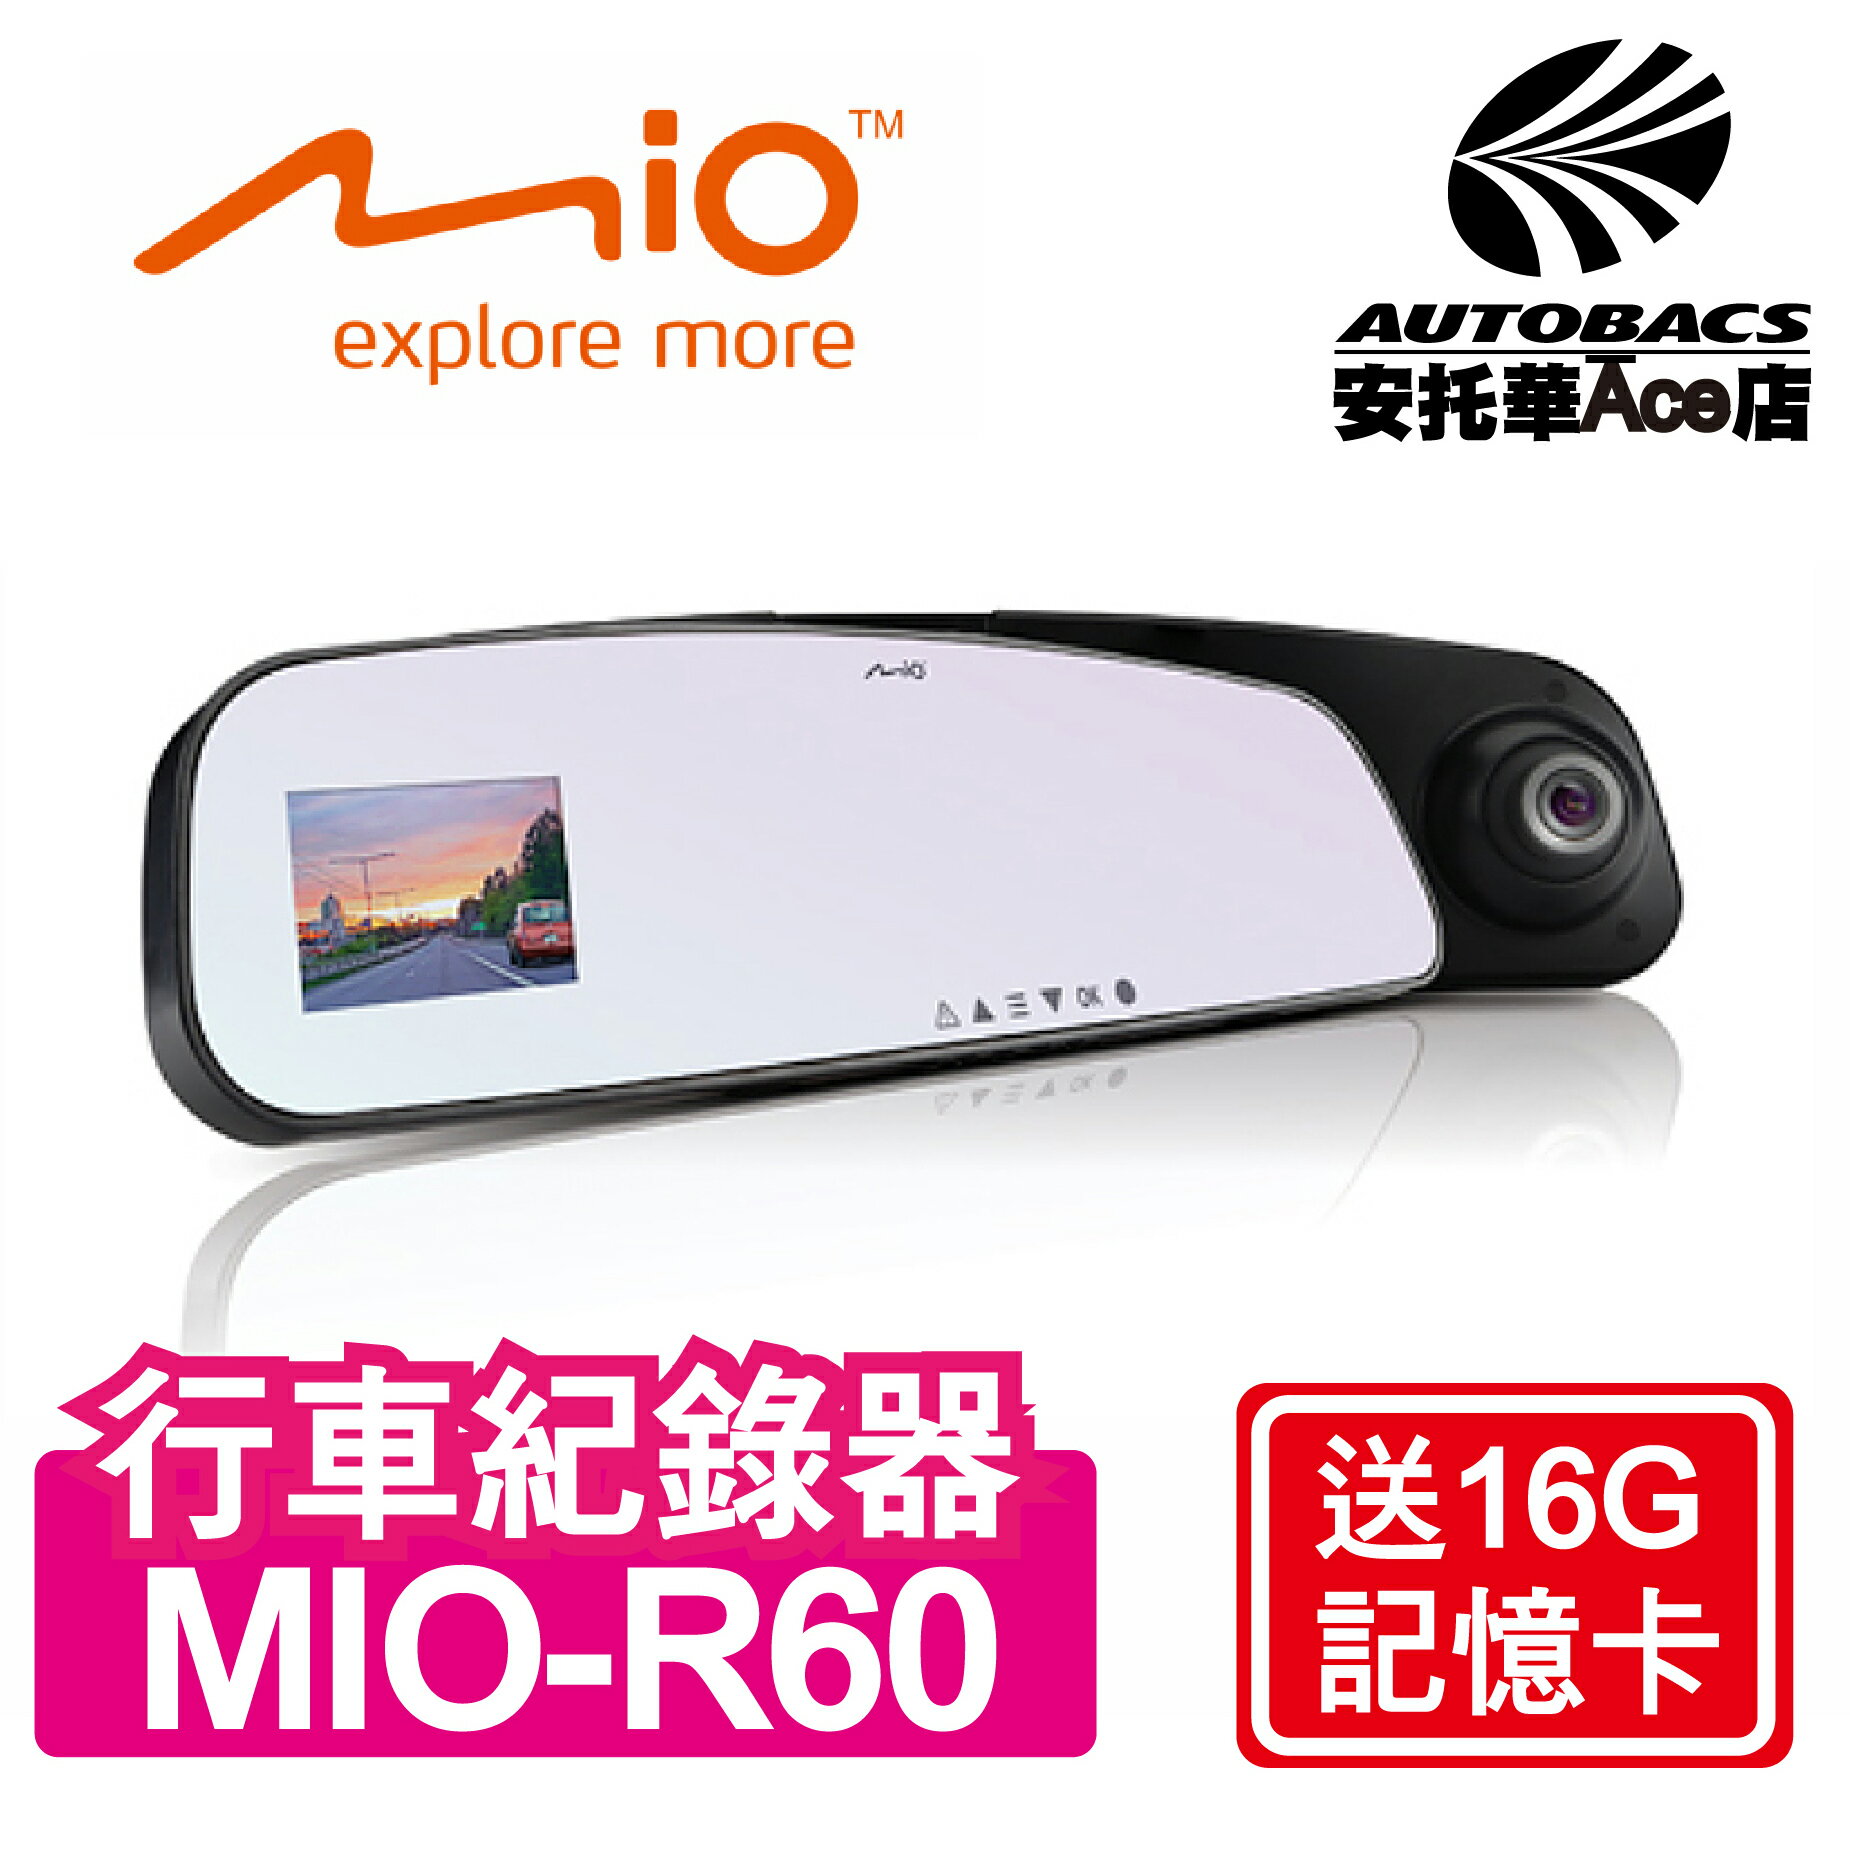 【超值優惠】MIO-R60 後視鏡行車紀錄器 送16G記憶卡(4713264280519)